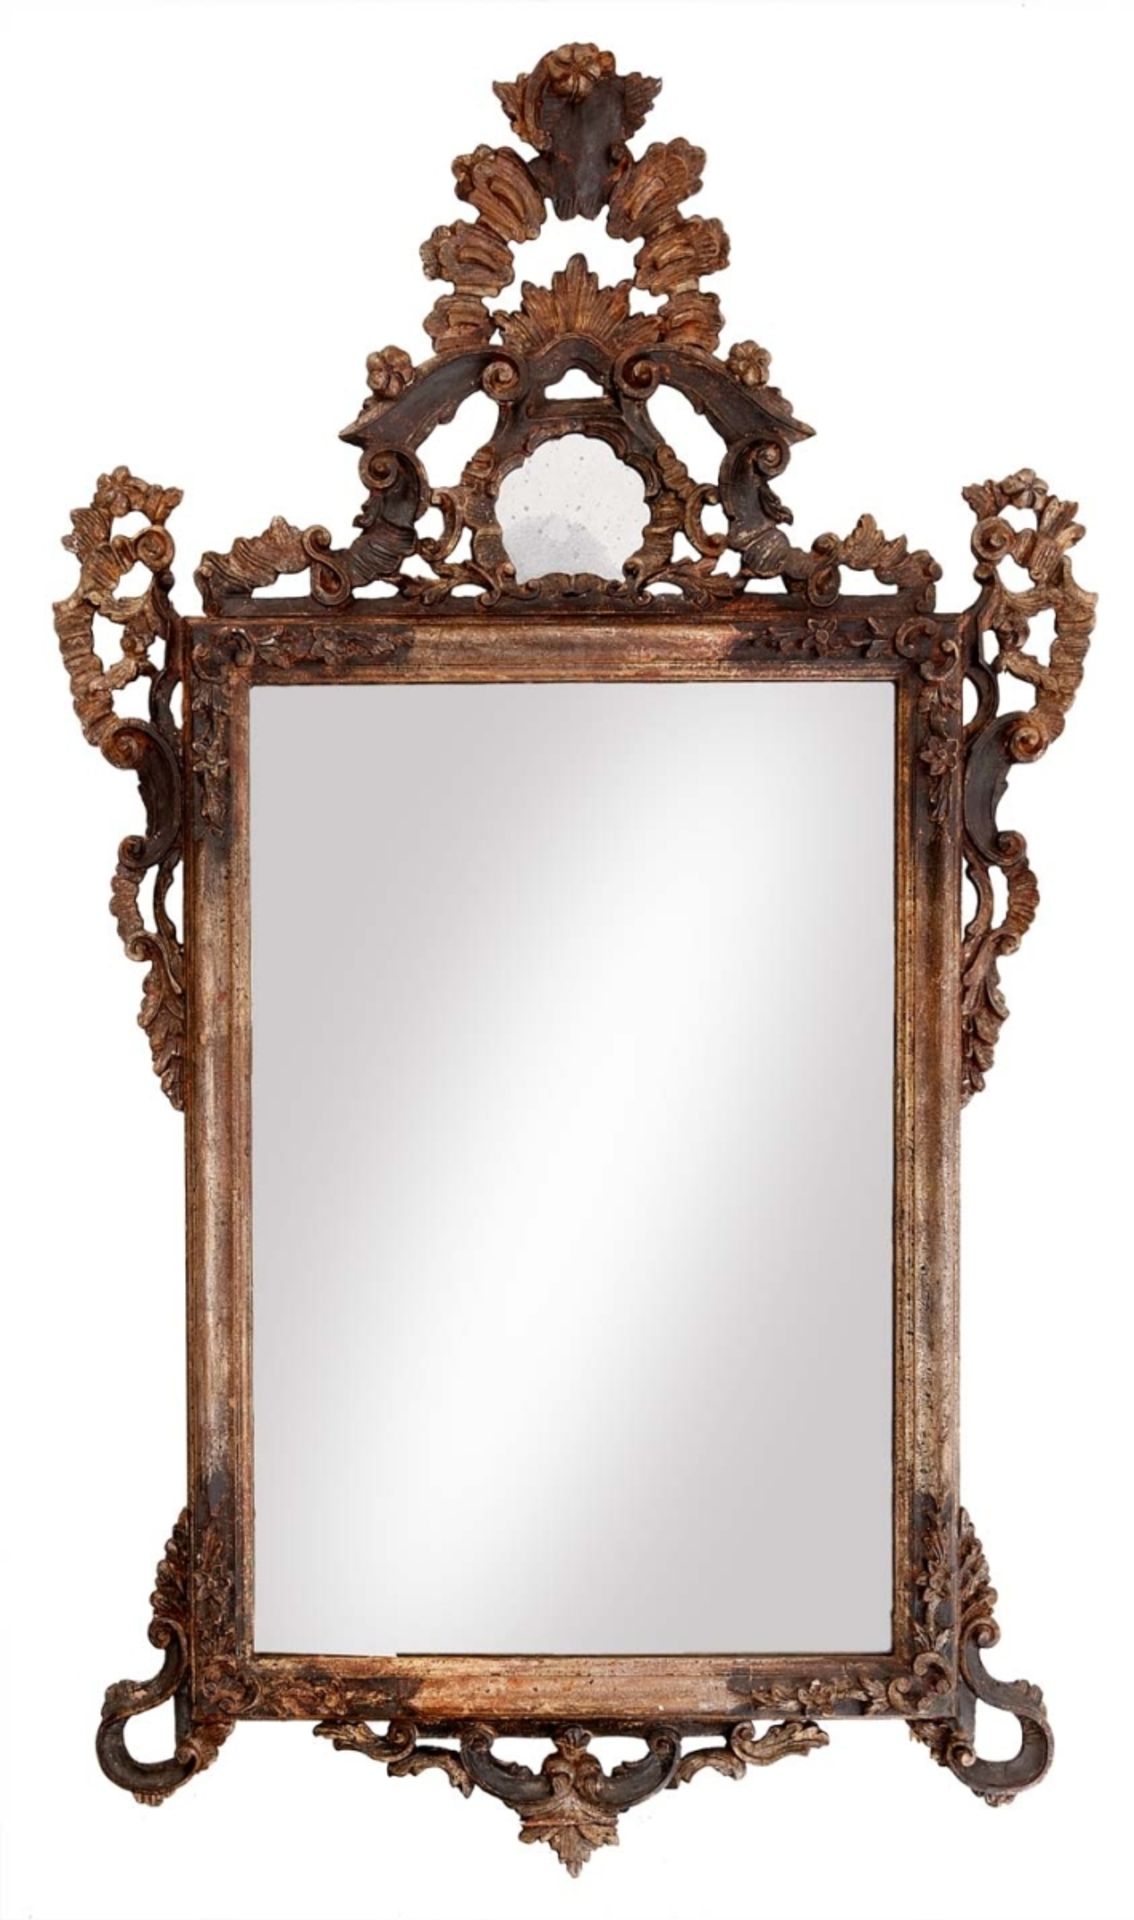 Spiegel im Barock-StilVenetien, 19. Jh.Profilierter, an den Ecken mit Blütenzweigen dekorierter